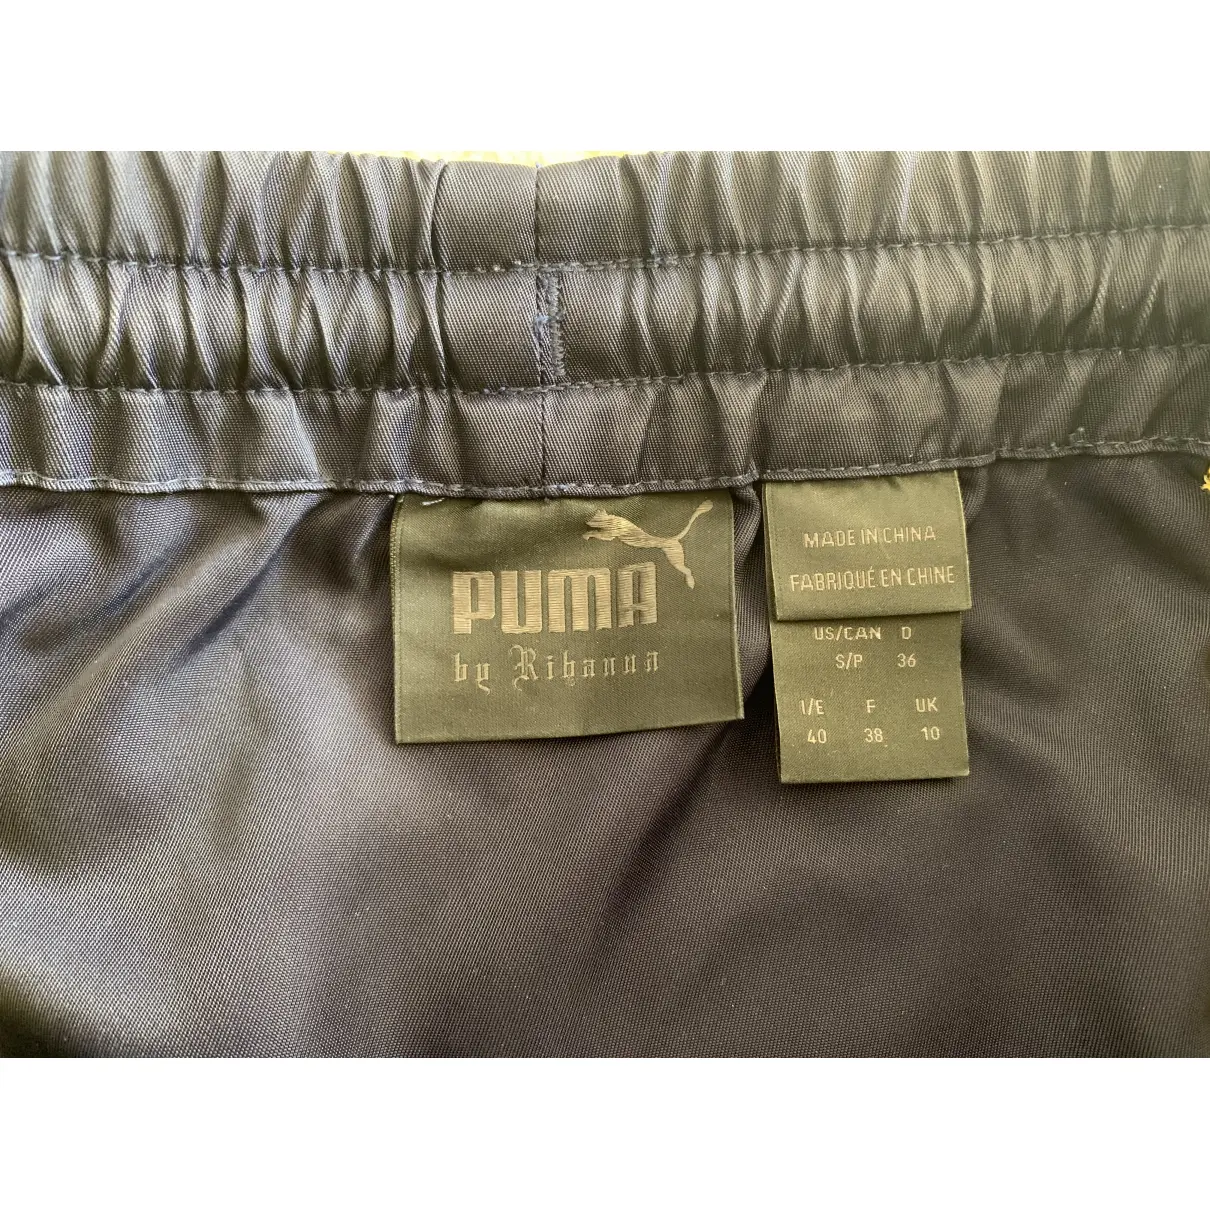 Luxury Fenty x Puma Skirts Women